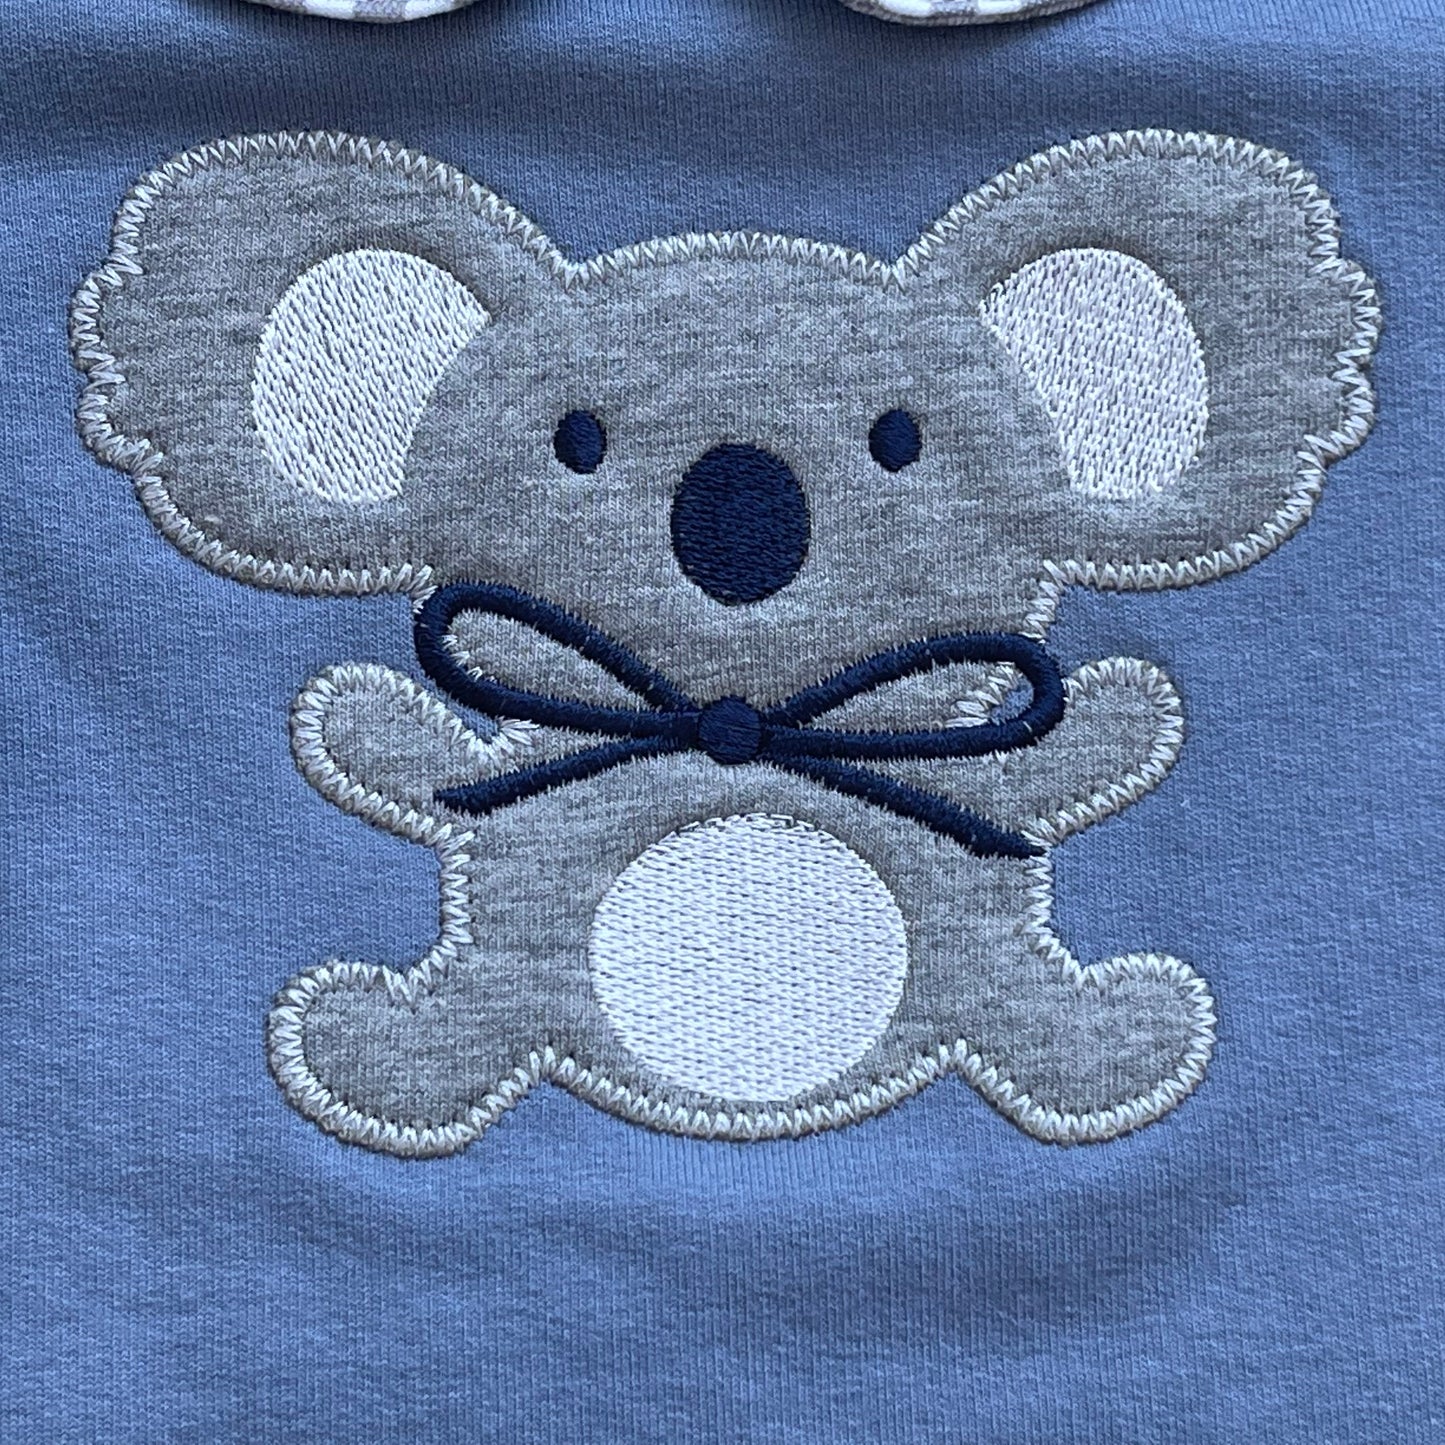 Comprar chándal para bebé niña. Detalle koala en sudadera. Color azul. Marca Alma Petit. Temporada otoño/inverno. 